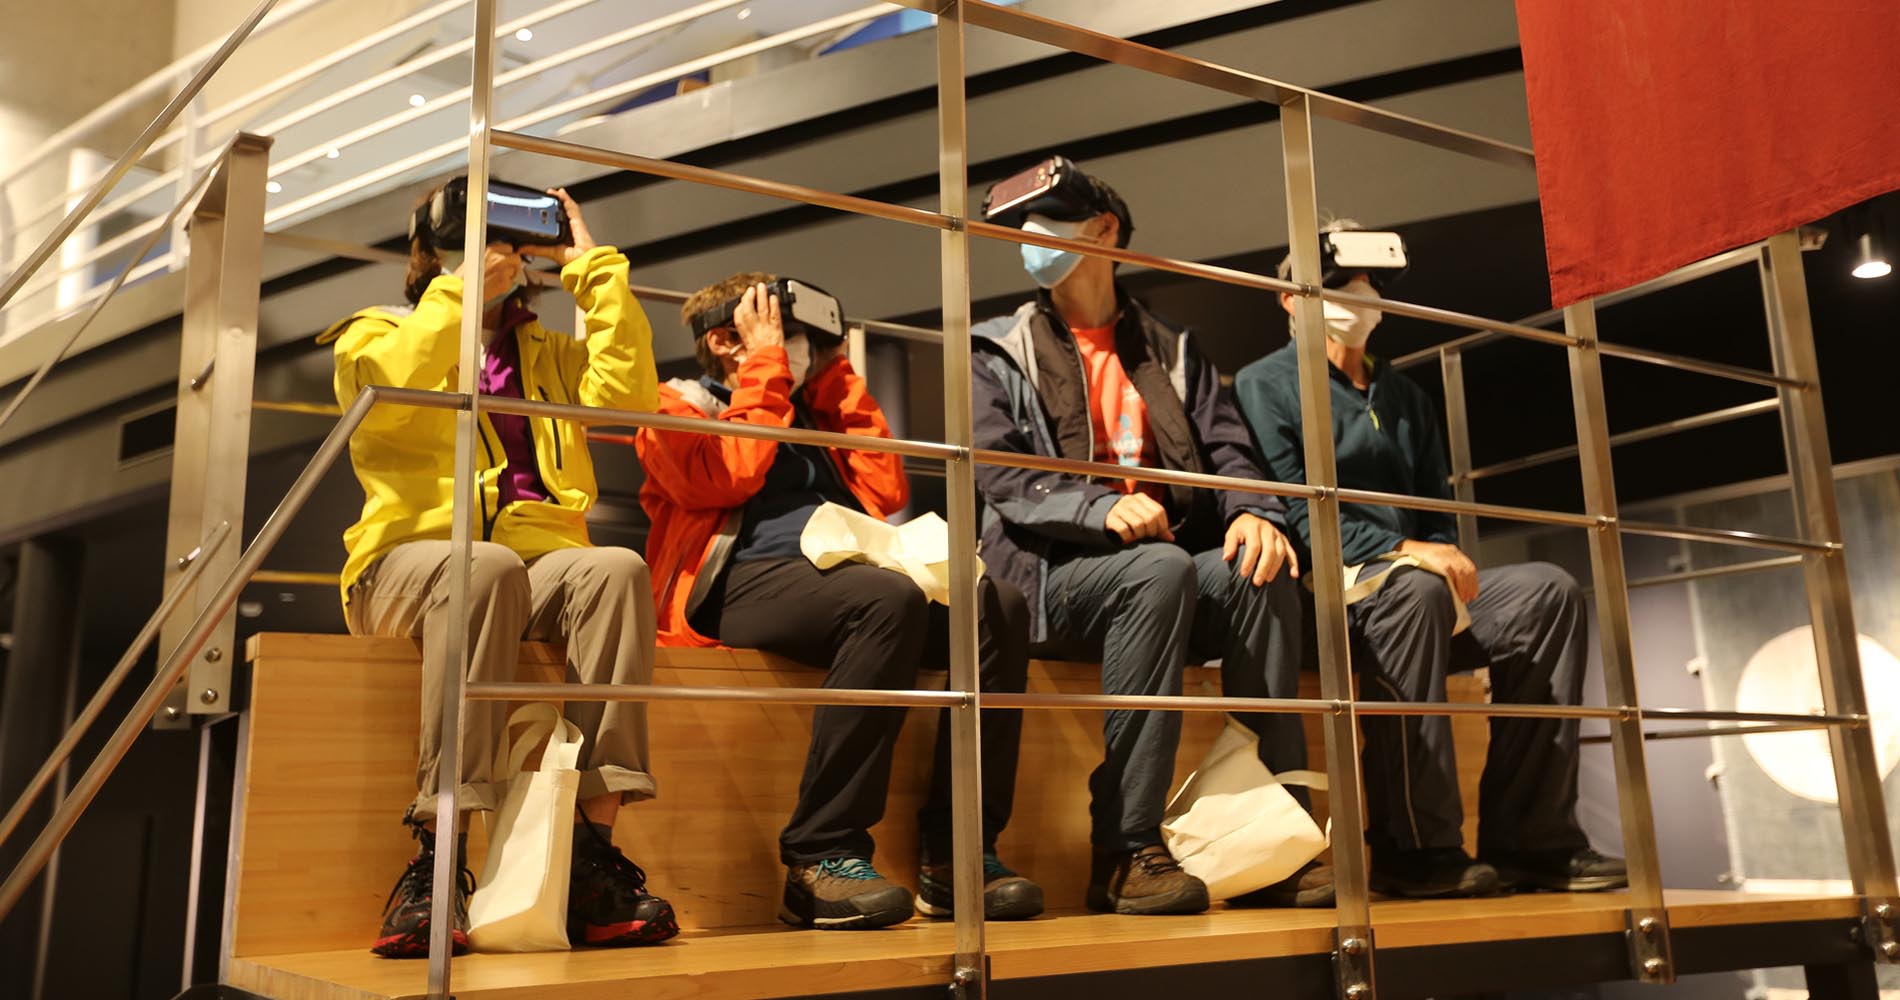 VR = Virtual Reality. Bof, bof, bof… 